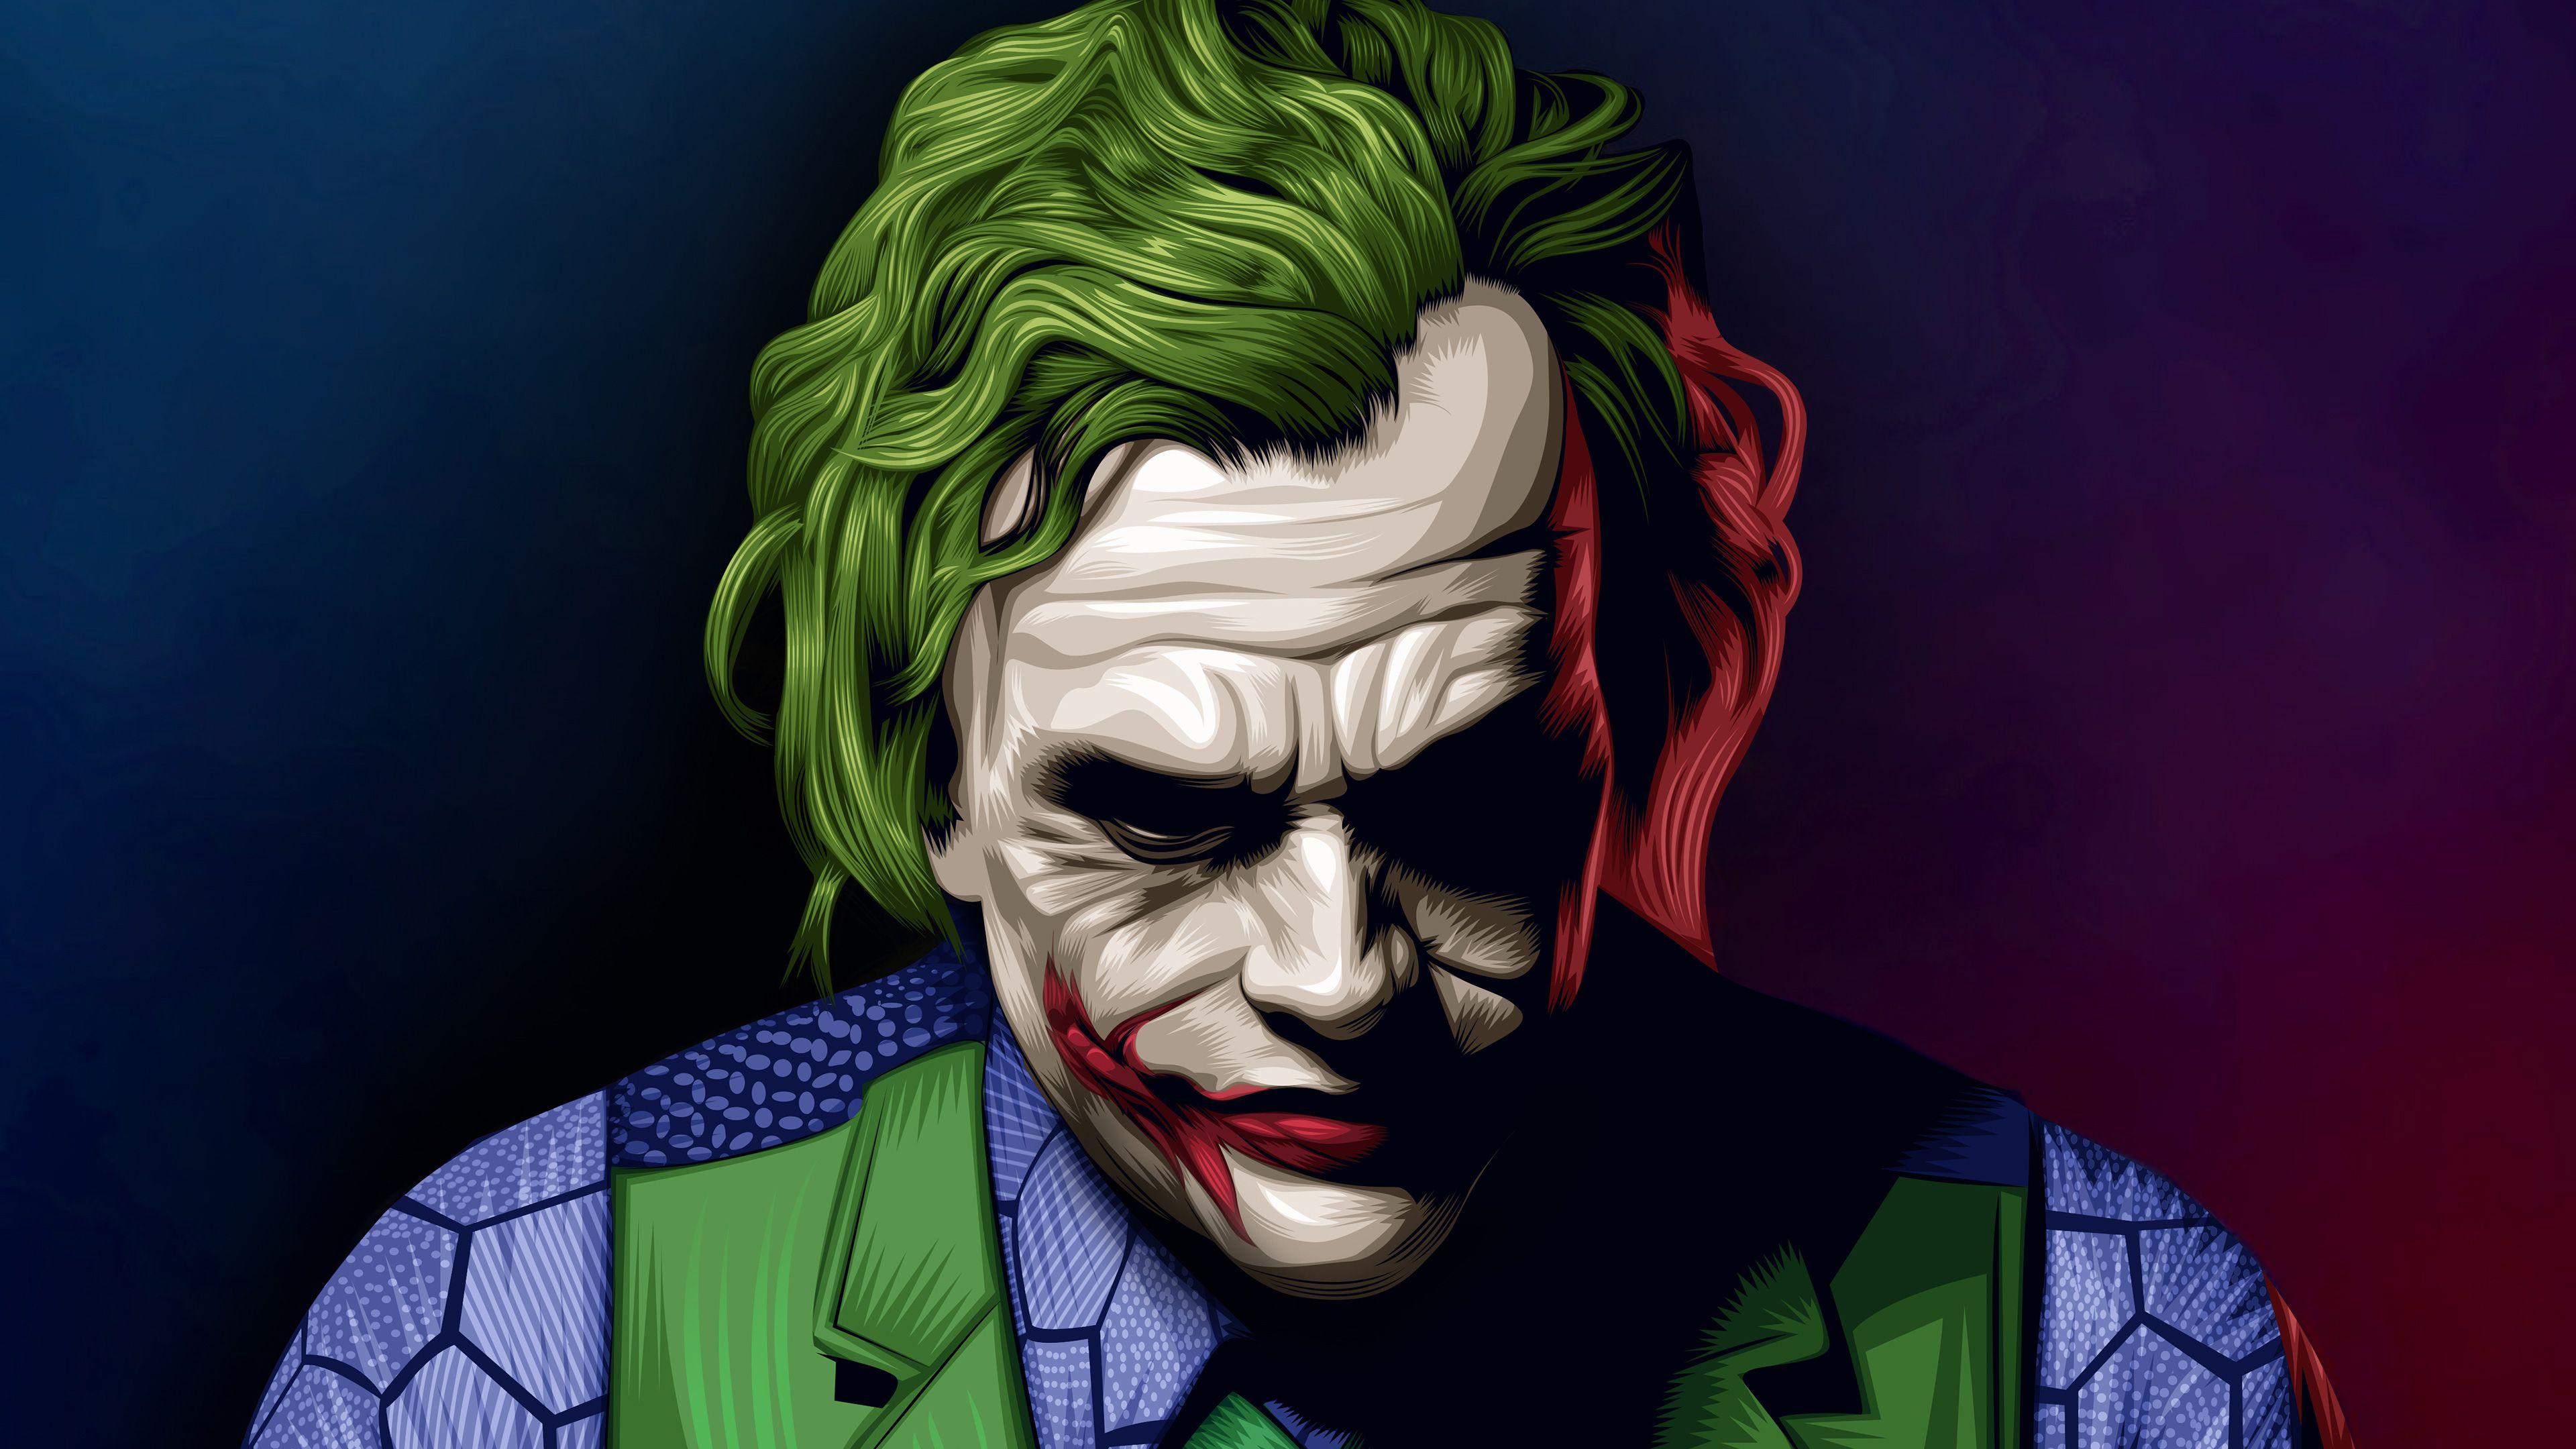 Joker Heath Ledger Illustration Superheroes Wallpaper, Joker Wallpaper, Hd Wallpaper, Digital Art Wallpaper. Joker Wallpaper, Joker HD Wallpaper, Joker Image